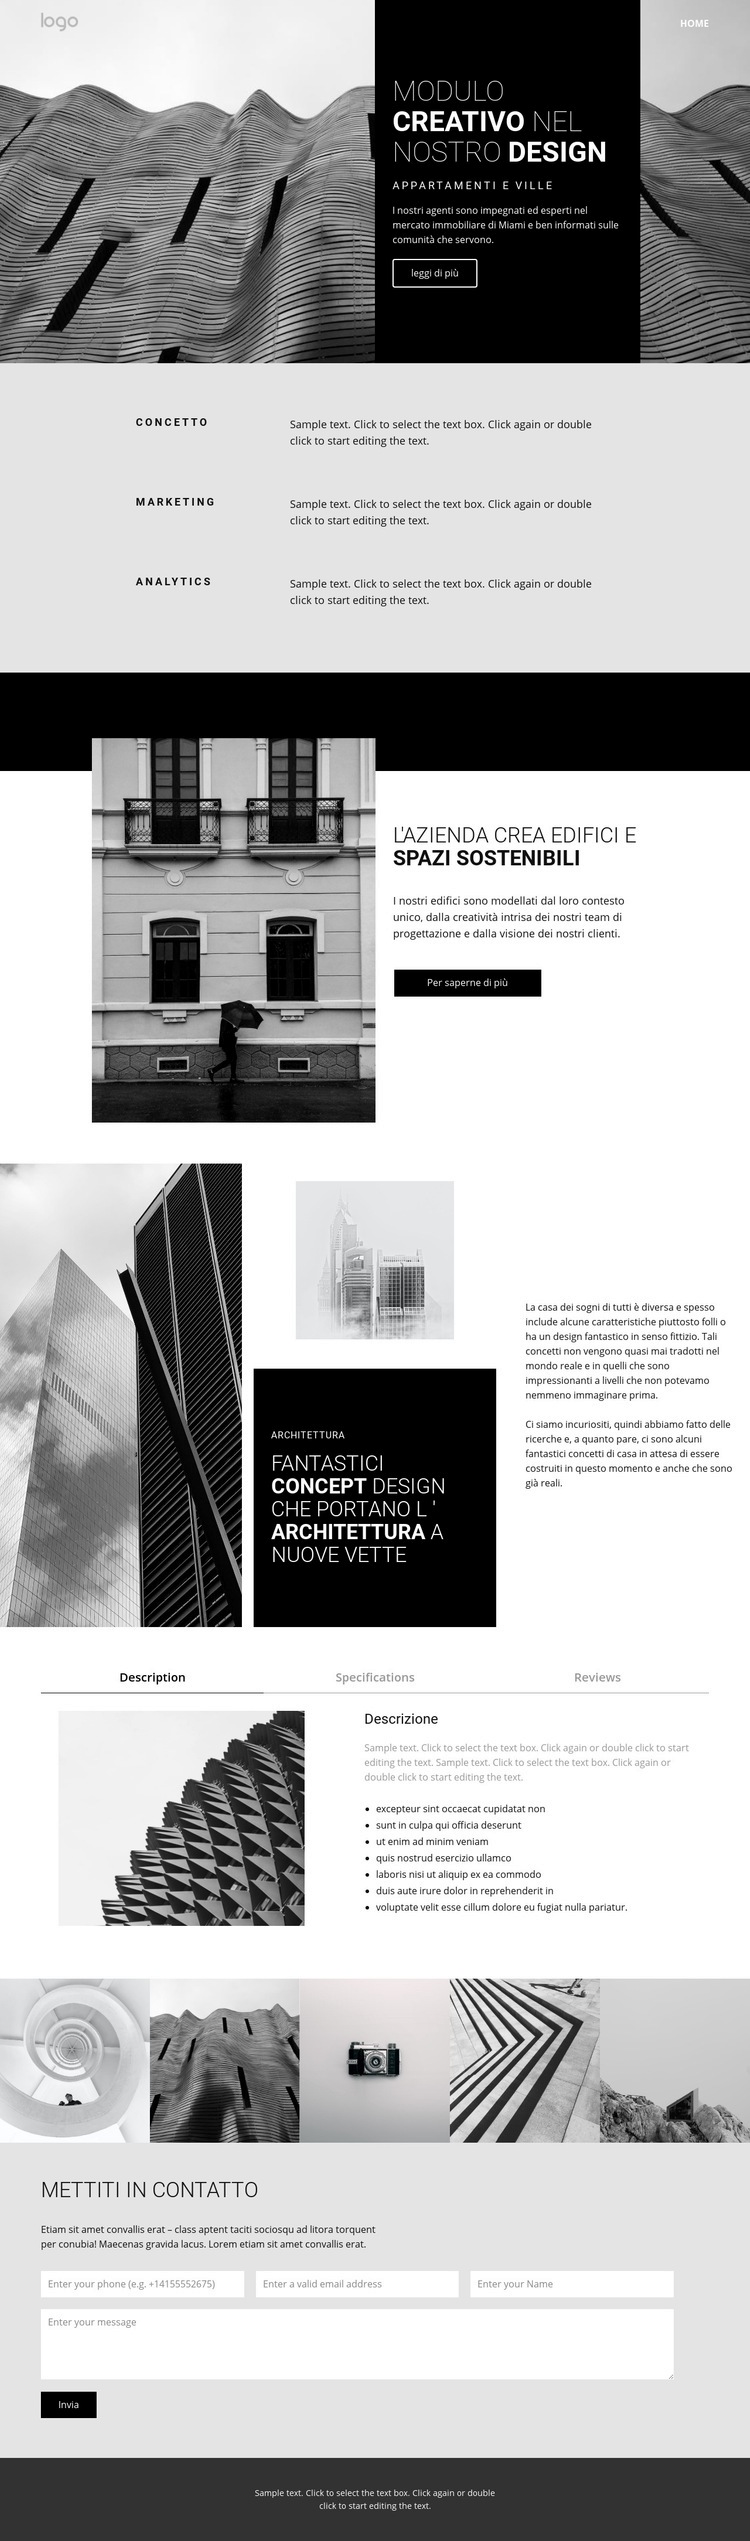 Architettura creativa del concetto Mockup del sito web